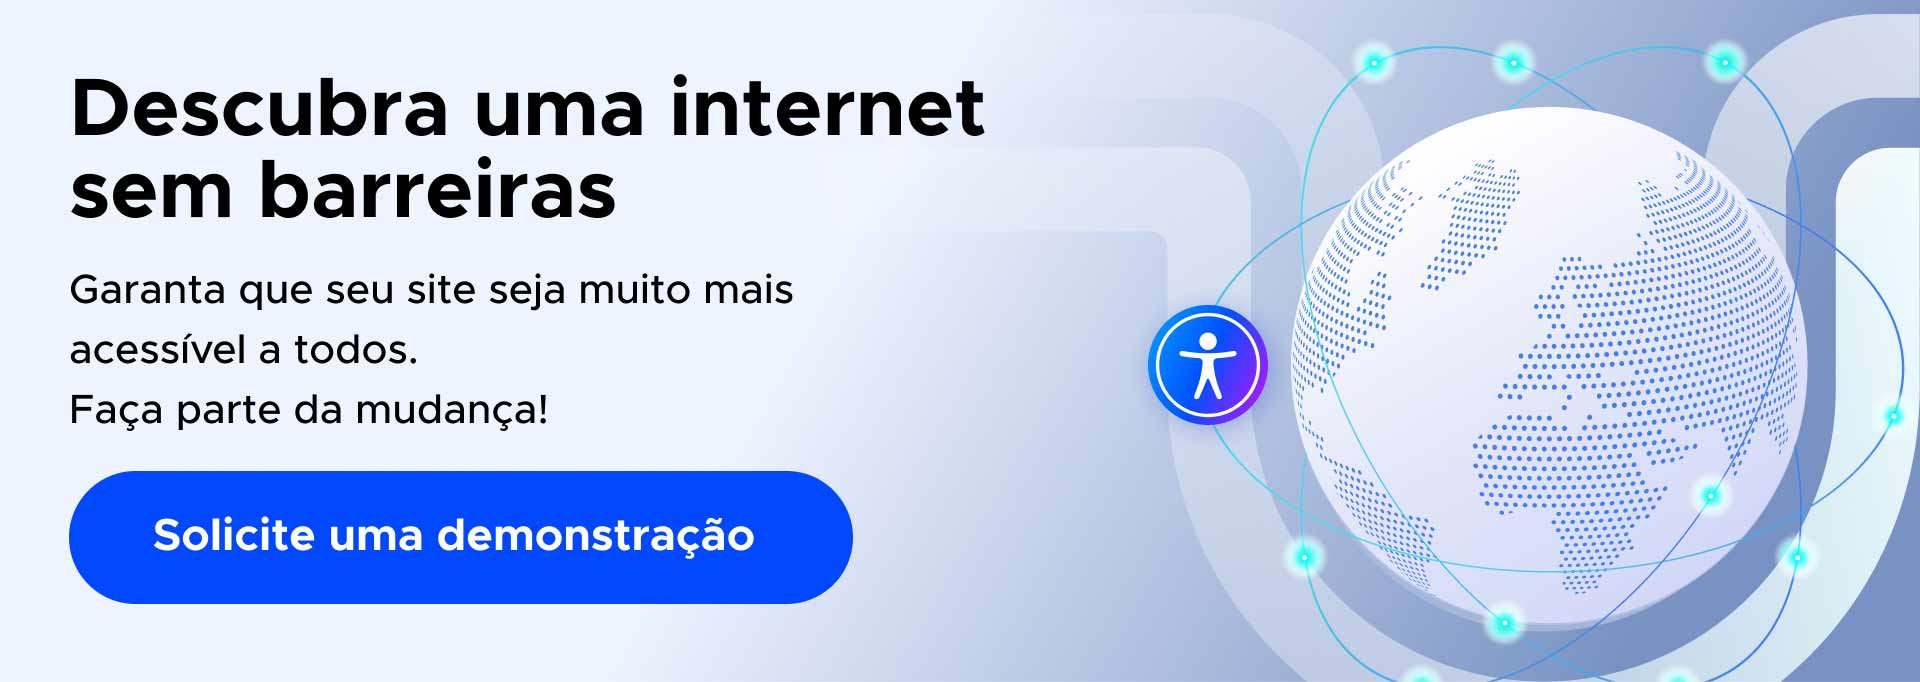 Banner promocional com texto 'Descubra uma internet sem barreiras', mostrando um ícone de acessibilidade e o globo terrestre